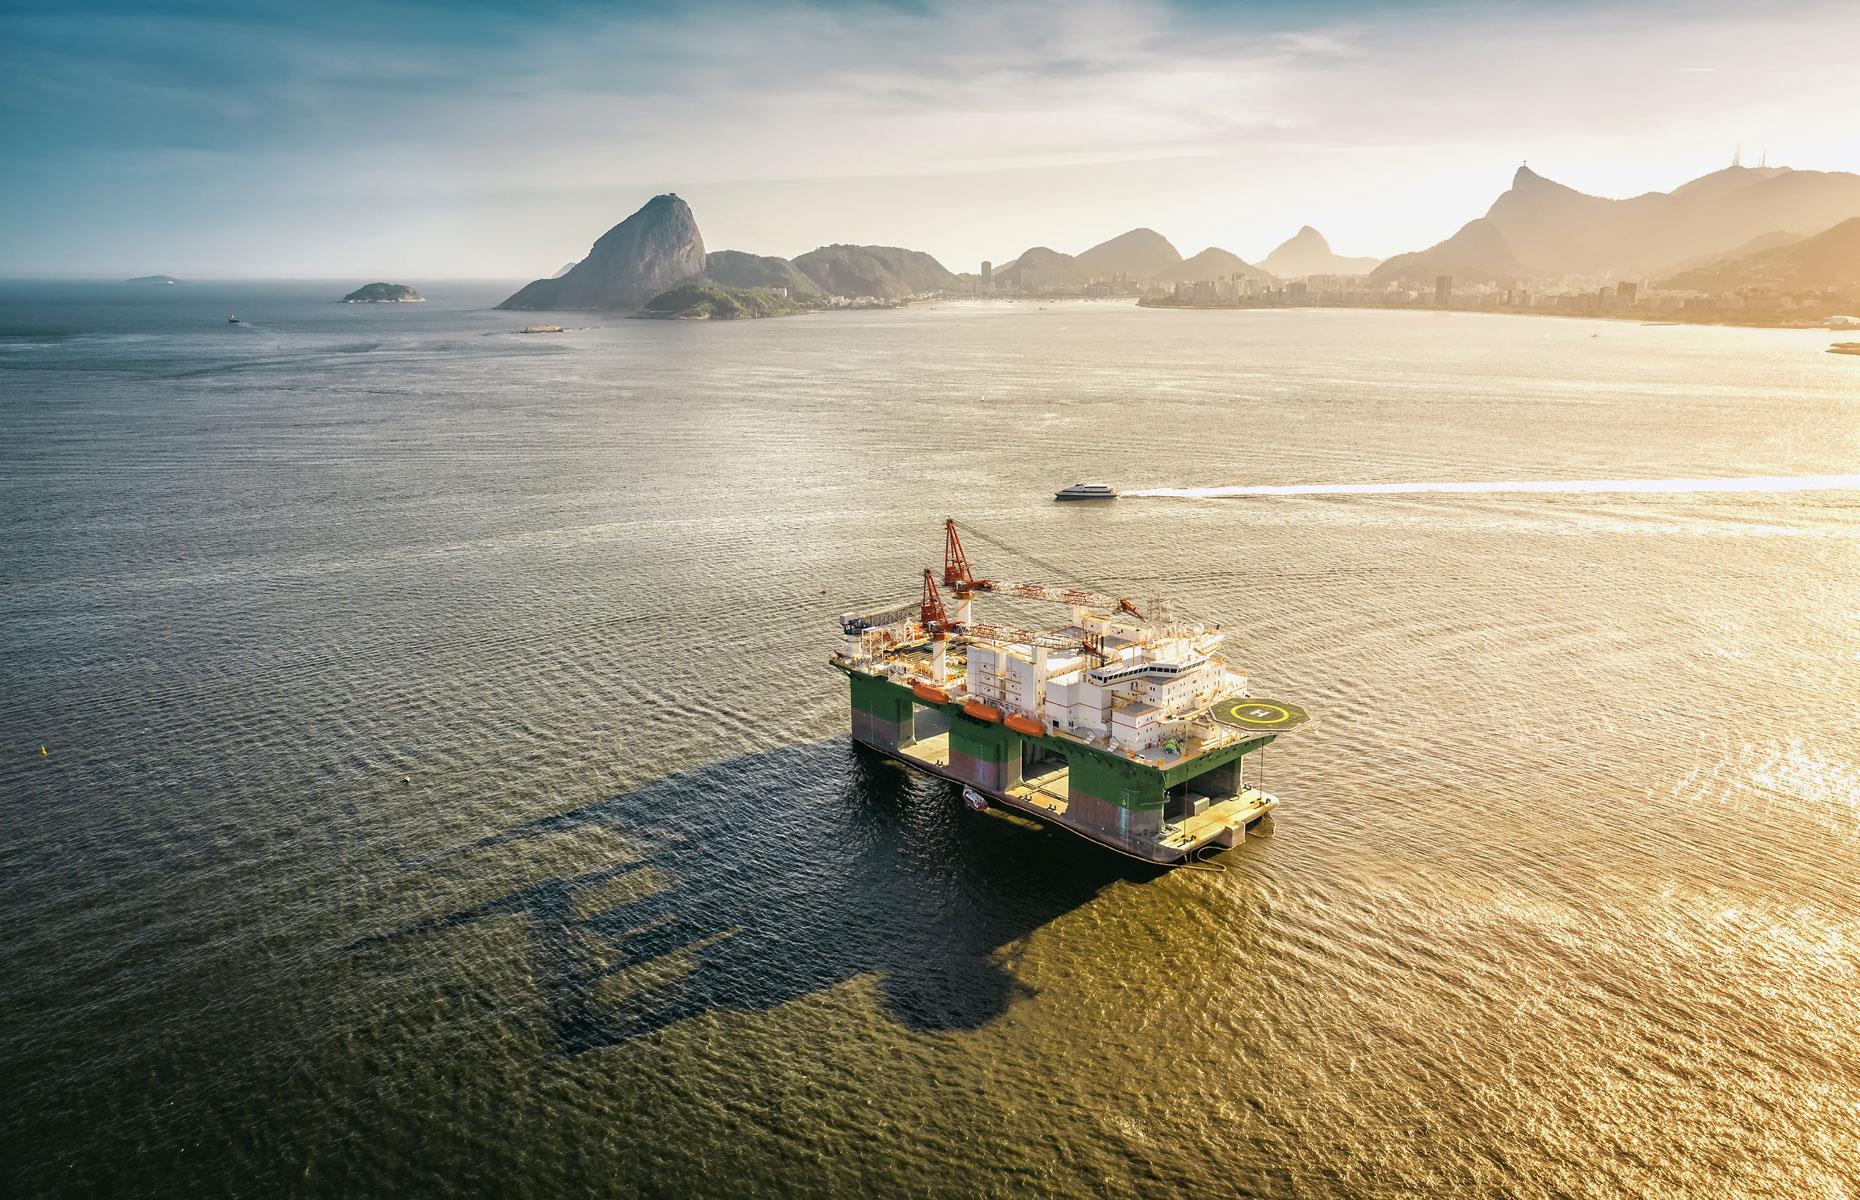 9. Brazil: 2.987 million barrels per day